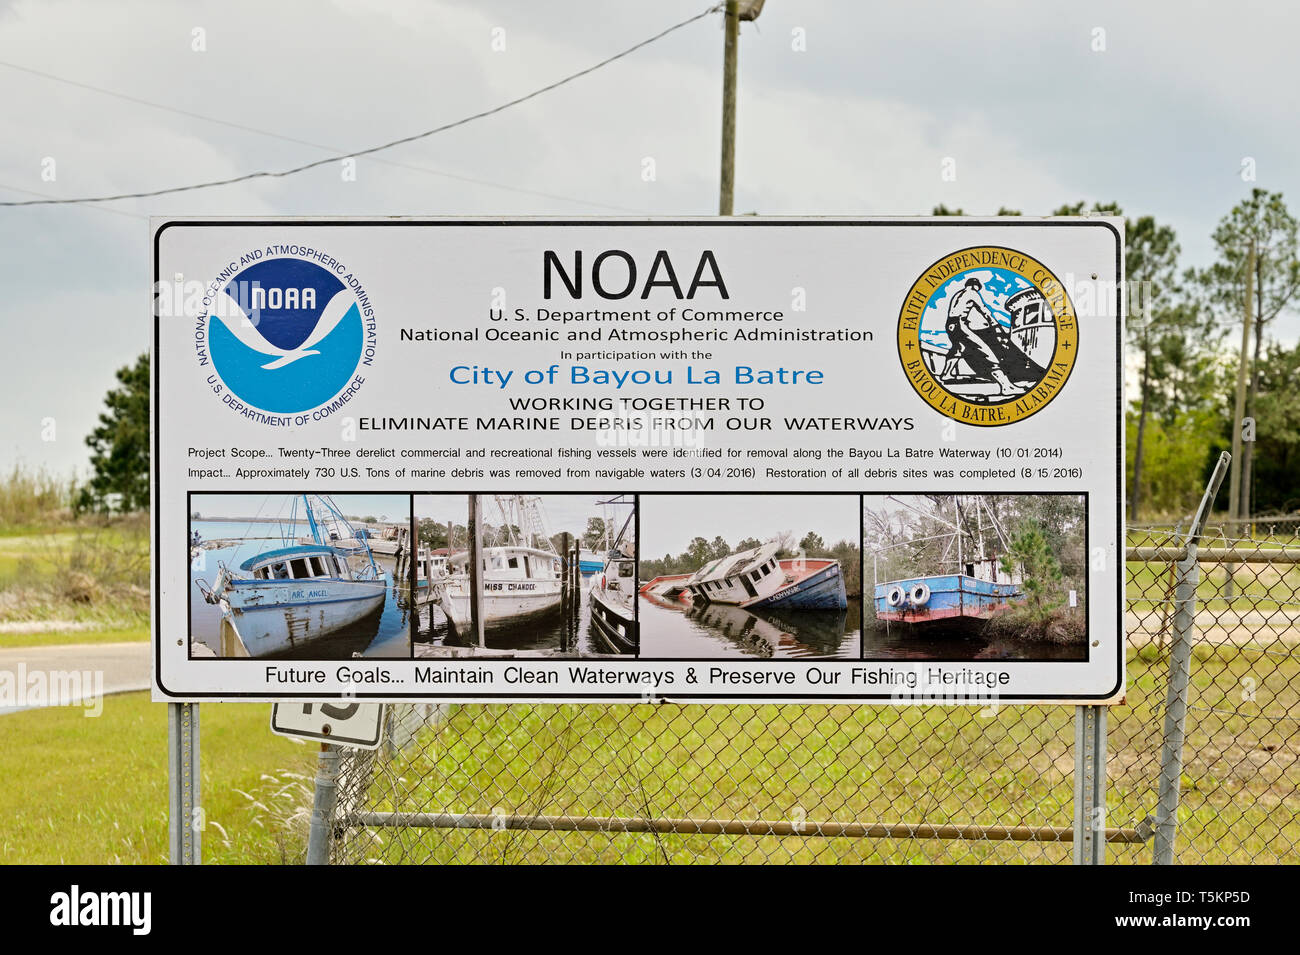 Signo de la NOAA asesorando la conservación para mantener limpias las vías navegables y mantener los desechos marinos de la bayou y Mobile Bay en Bayou La Batre, Alabama, Estados Unidos. Foto de stock